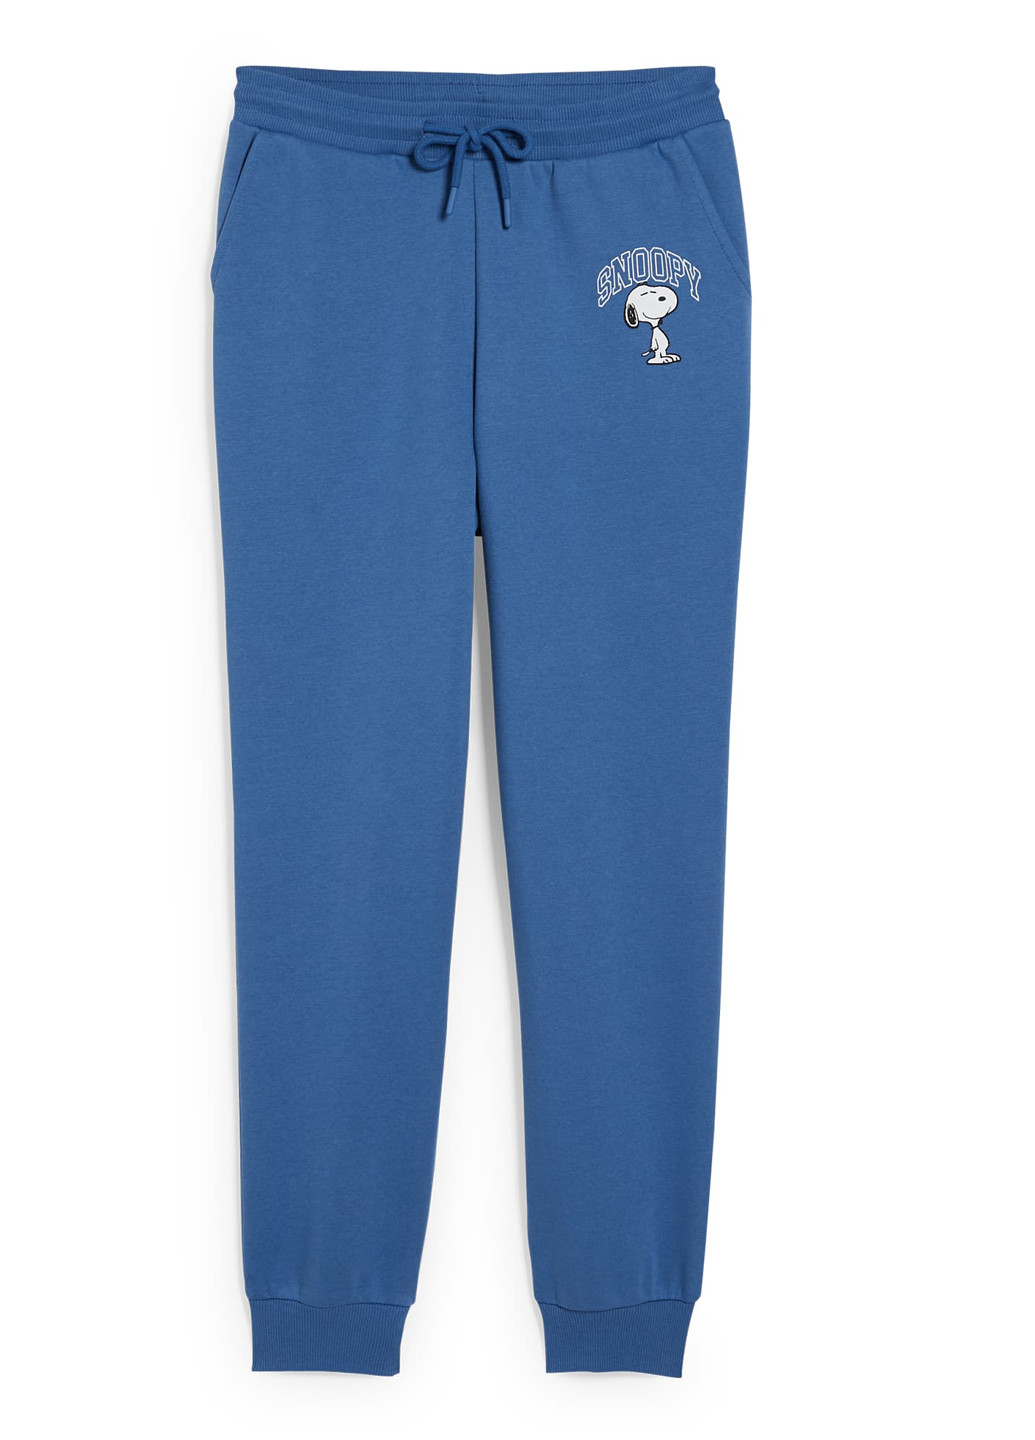 Синие спортивные зимние джоггеры брюки C&A